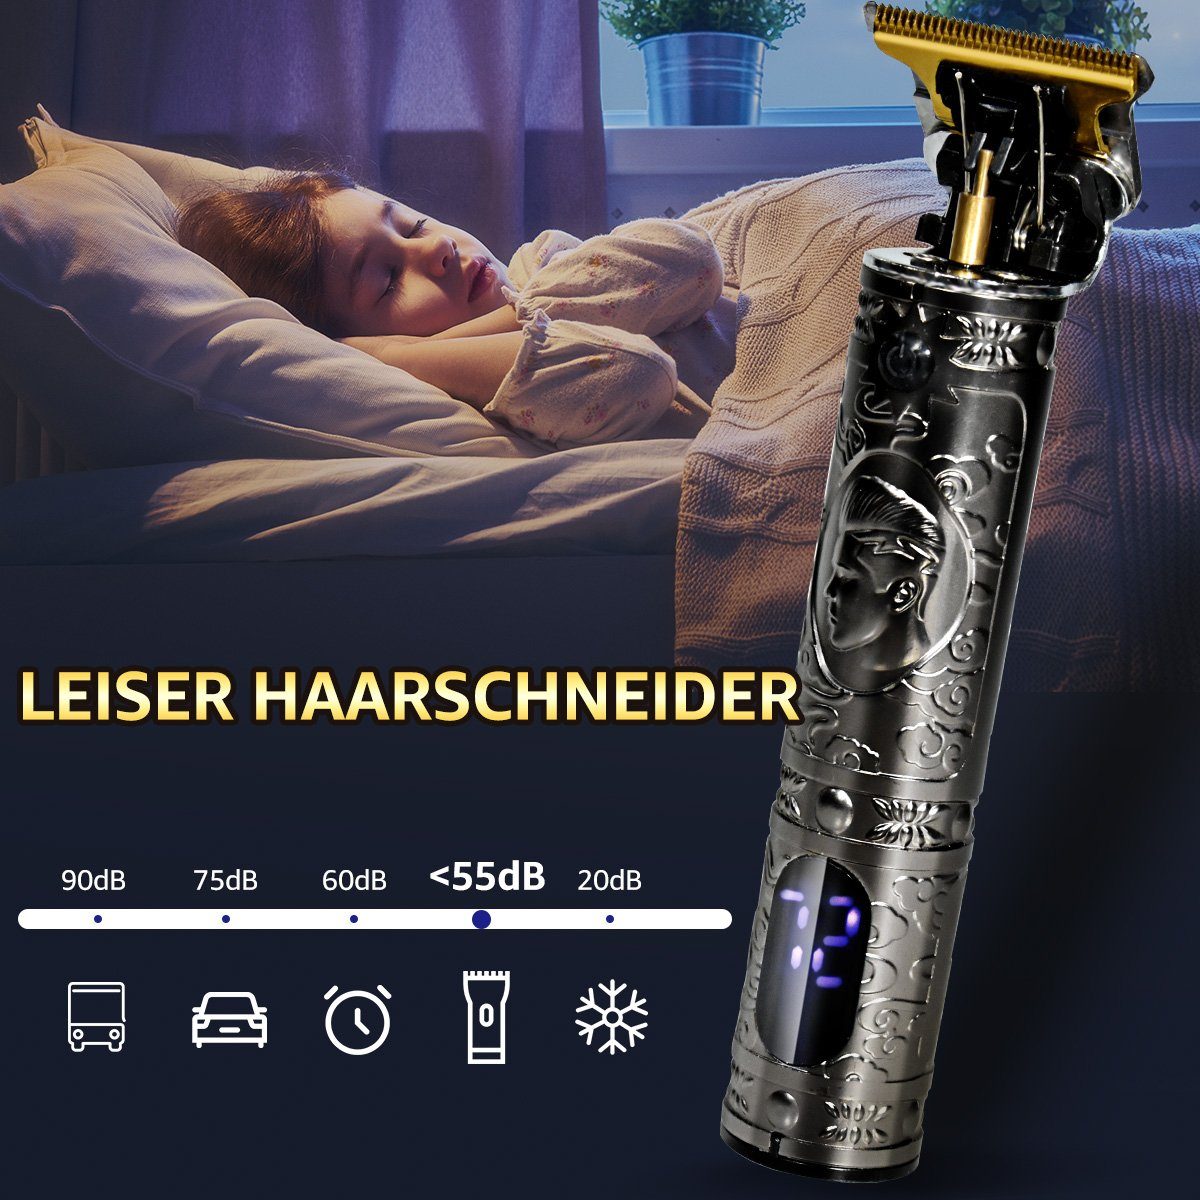 LifeImpree Haarschneidemaschine T-Blade Bartschneider Multifunktionstrimmer, Haarschneider Profi